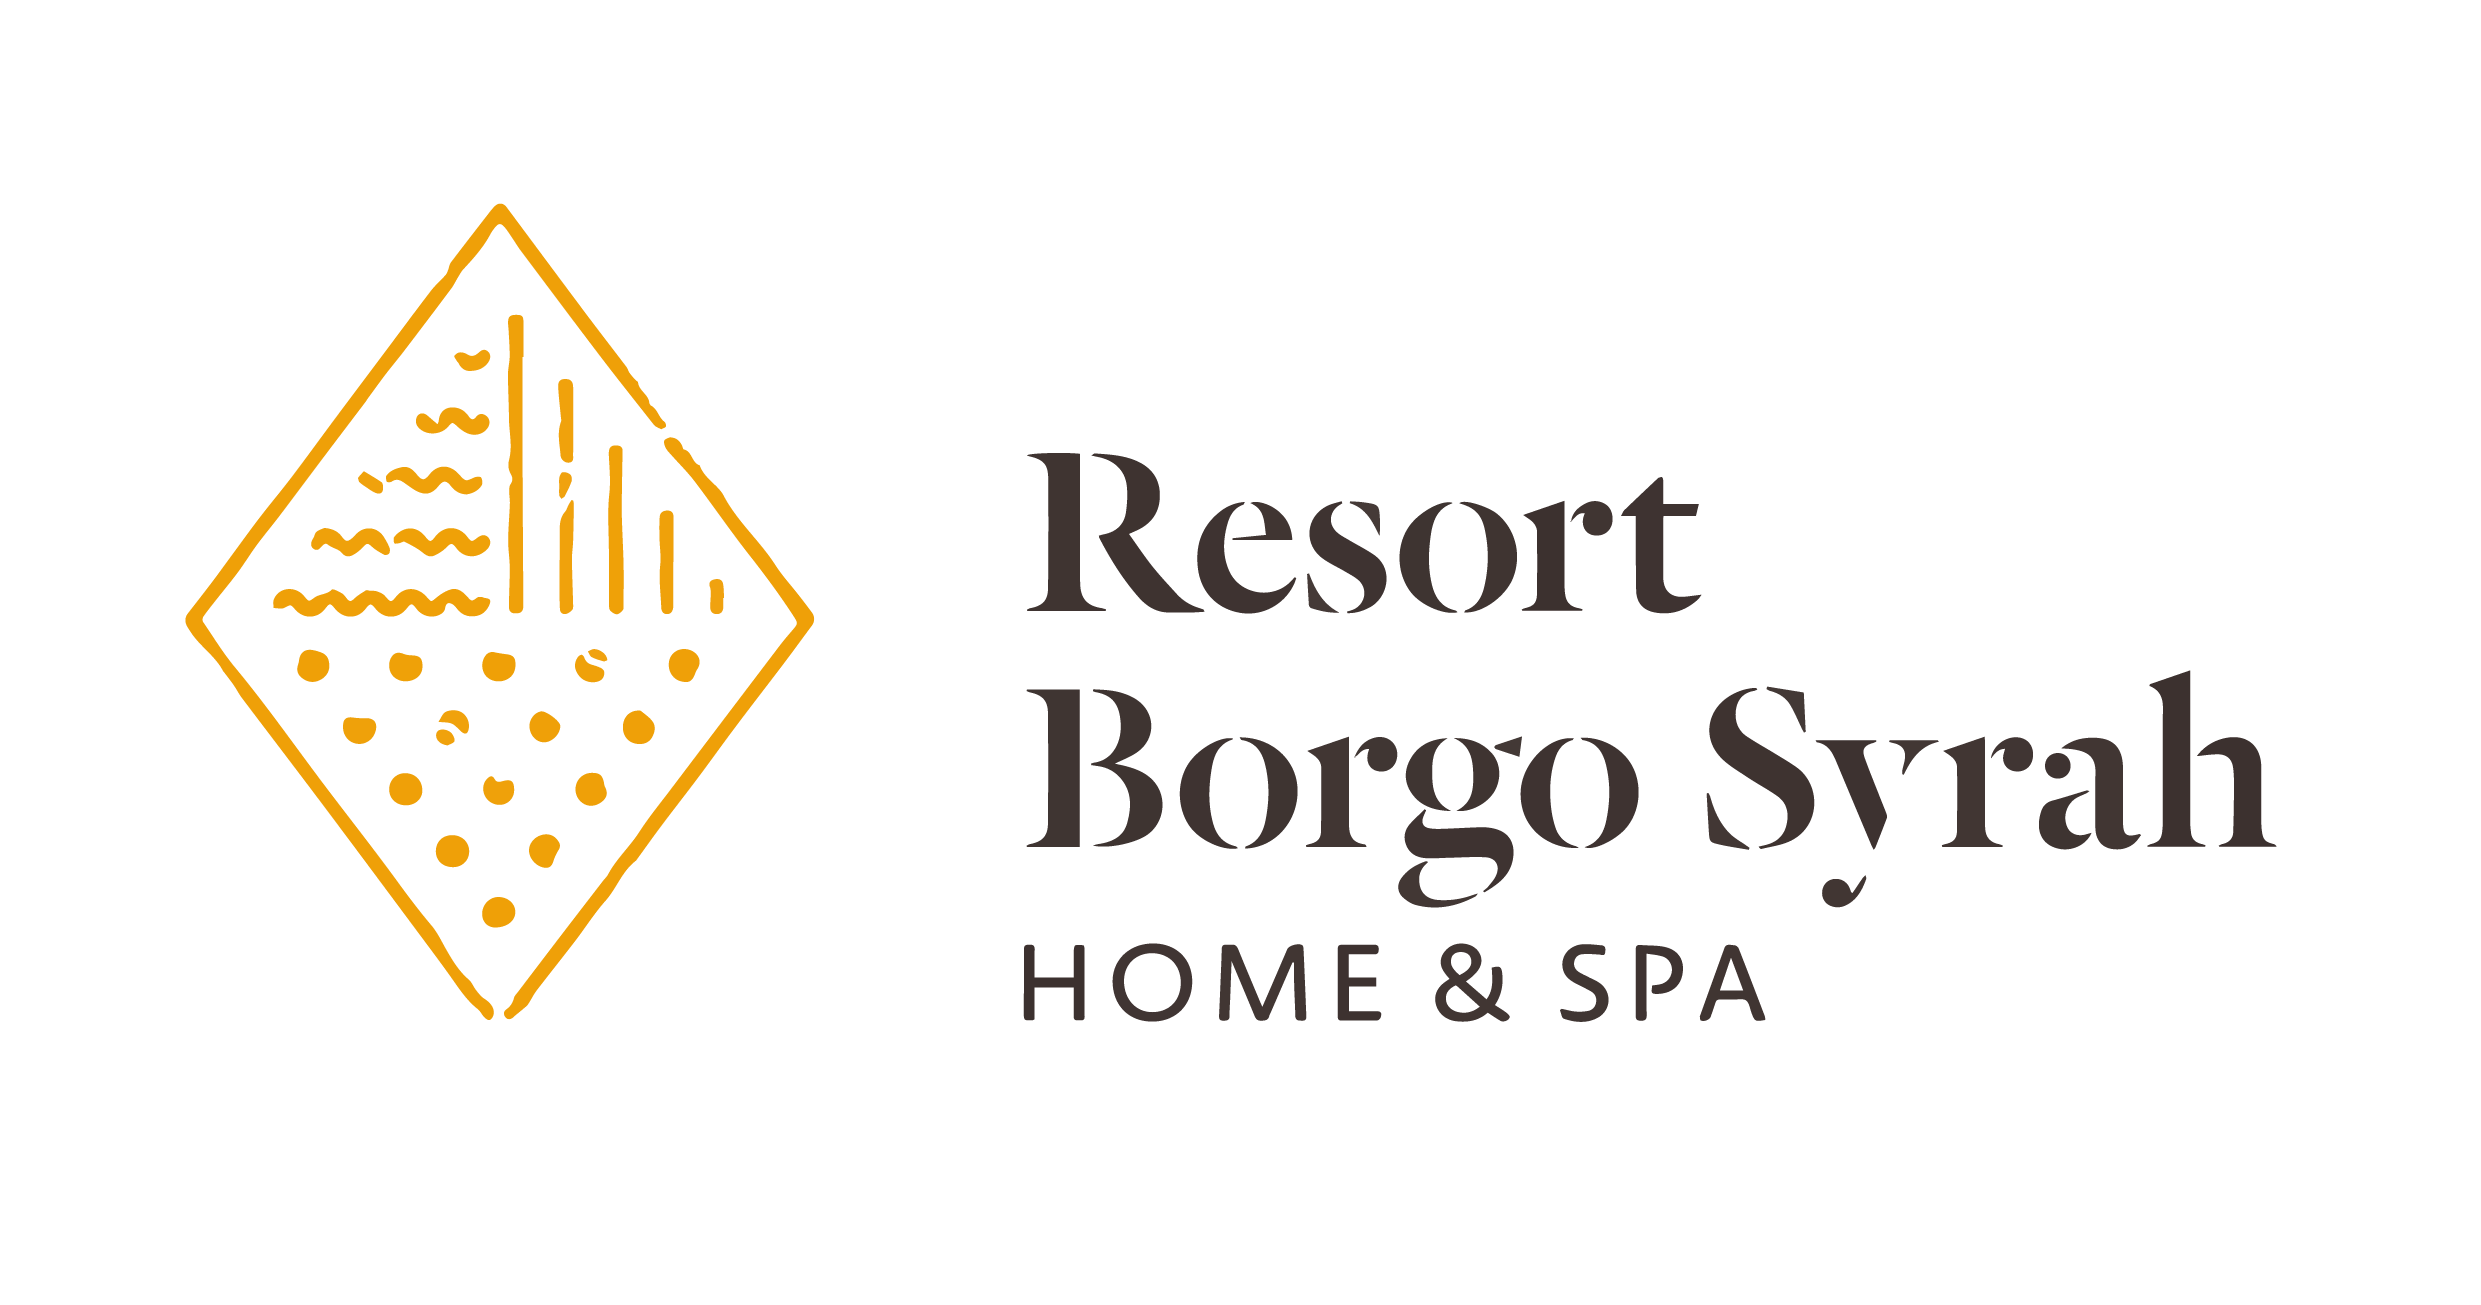 Resort Borgo Syrah